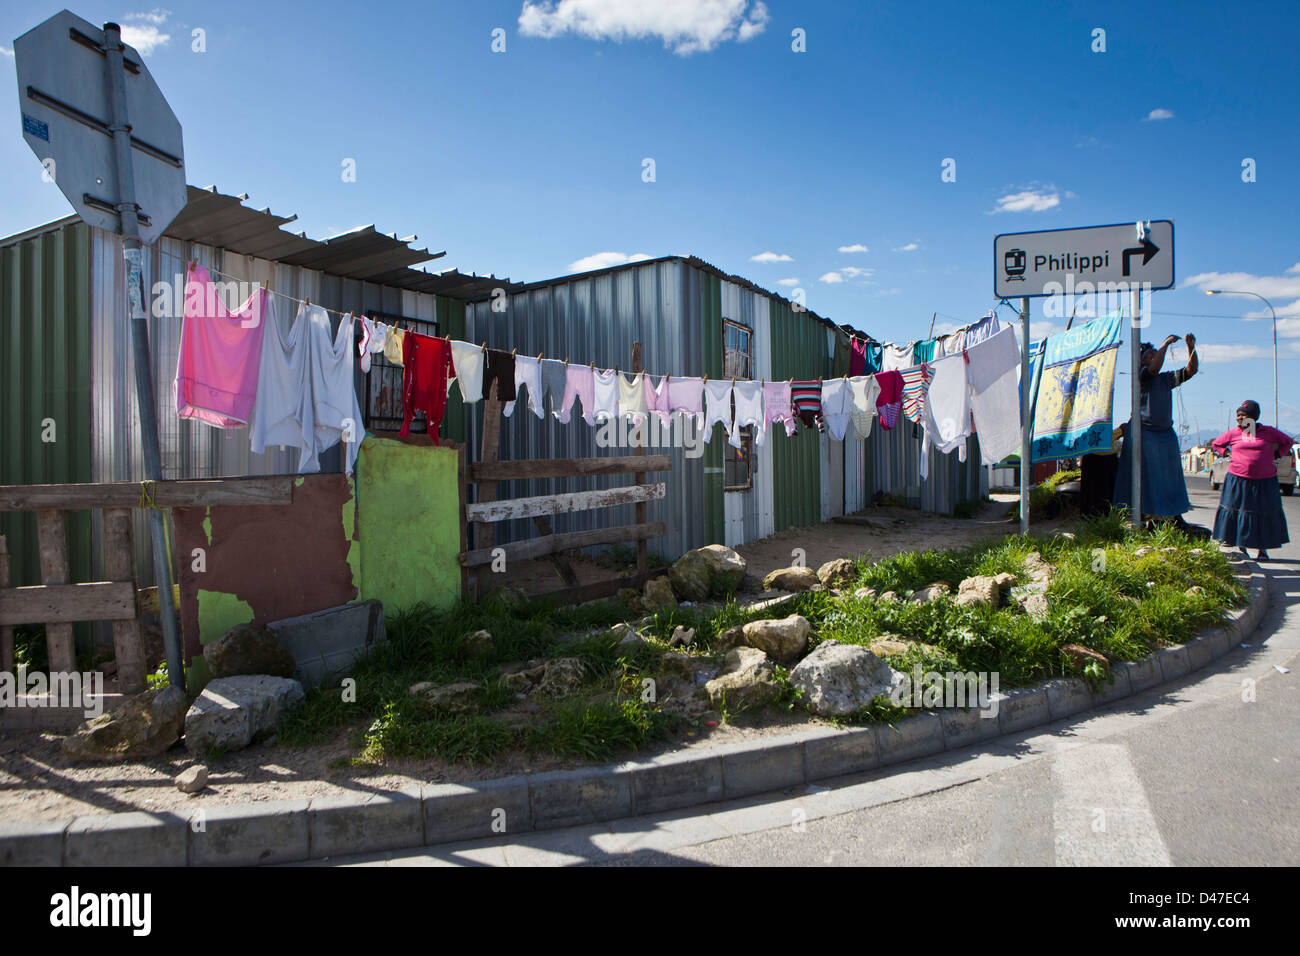 Frau und waschen in Philippi Township in Kapstadt, Südafrika. Eines der größeren Slums und beheimatet Tausende in Armut. Stockfoto